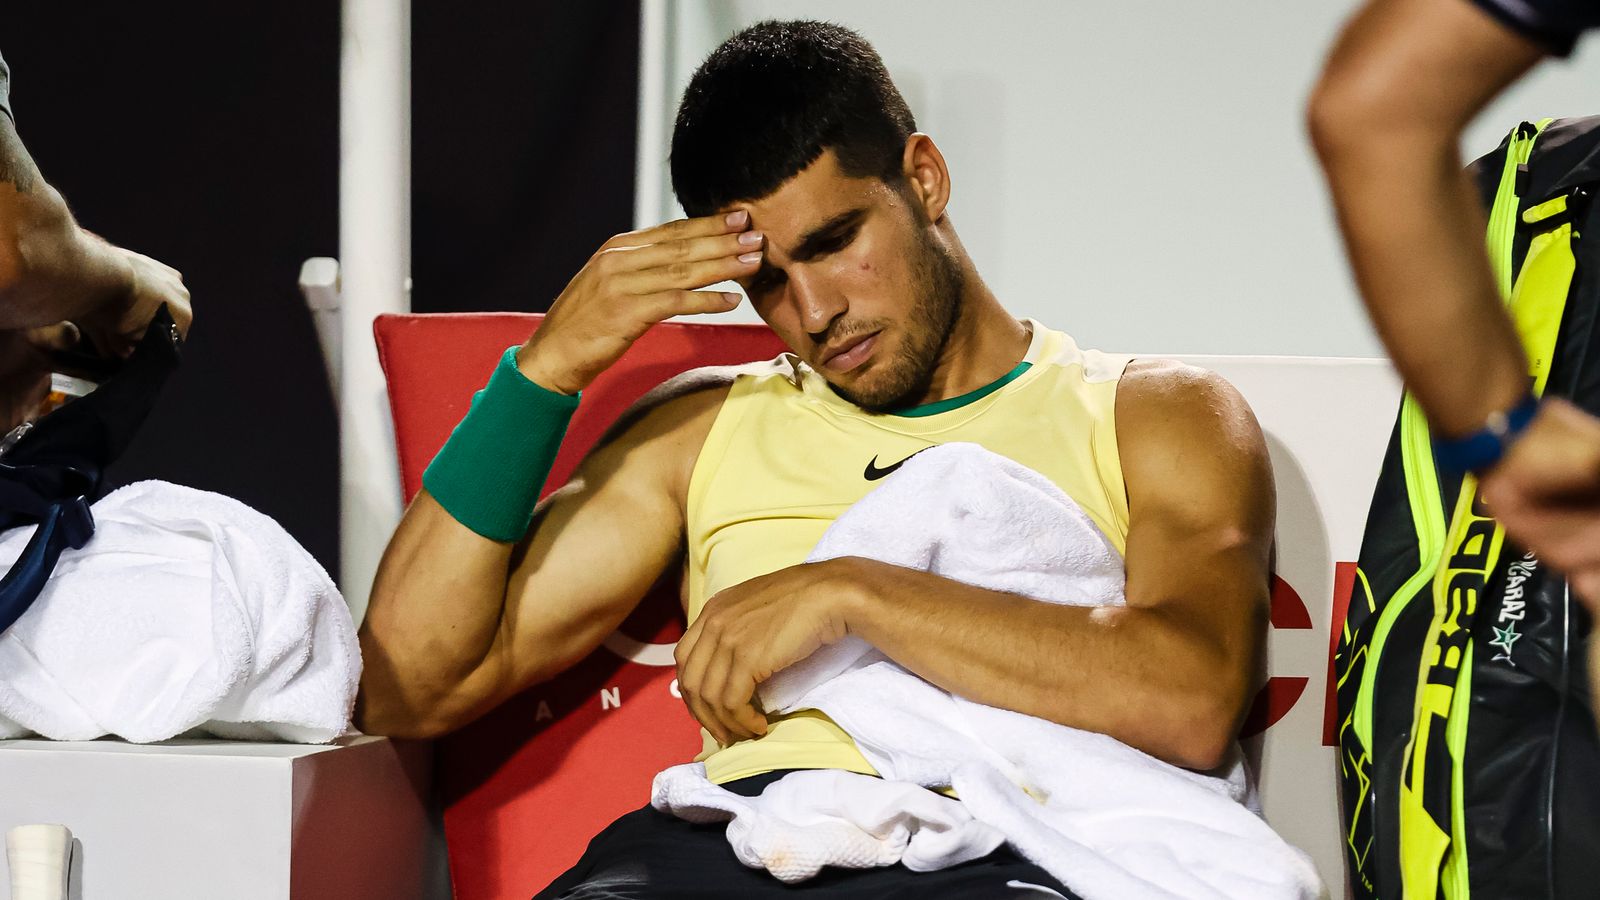 Alcaraz tërhiqet i dëmtuar nga turneu ATP 500, u Sinner  i bën “presion” për nr. 2 në botë